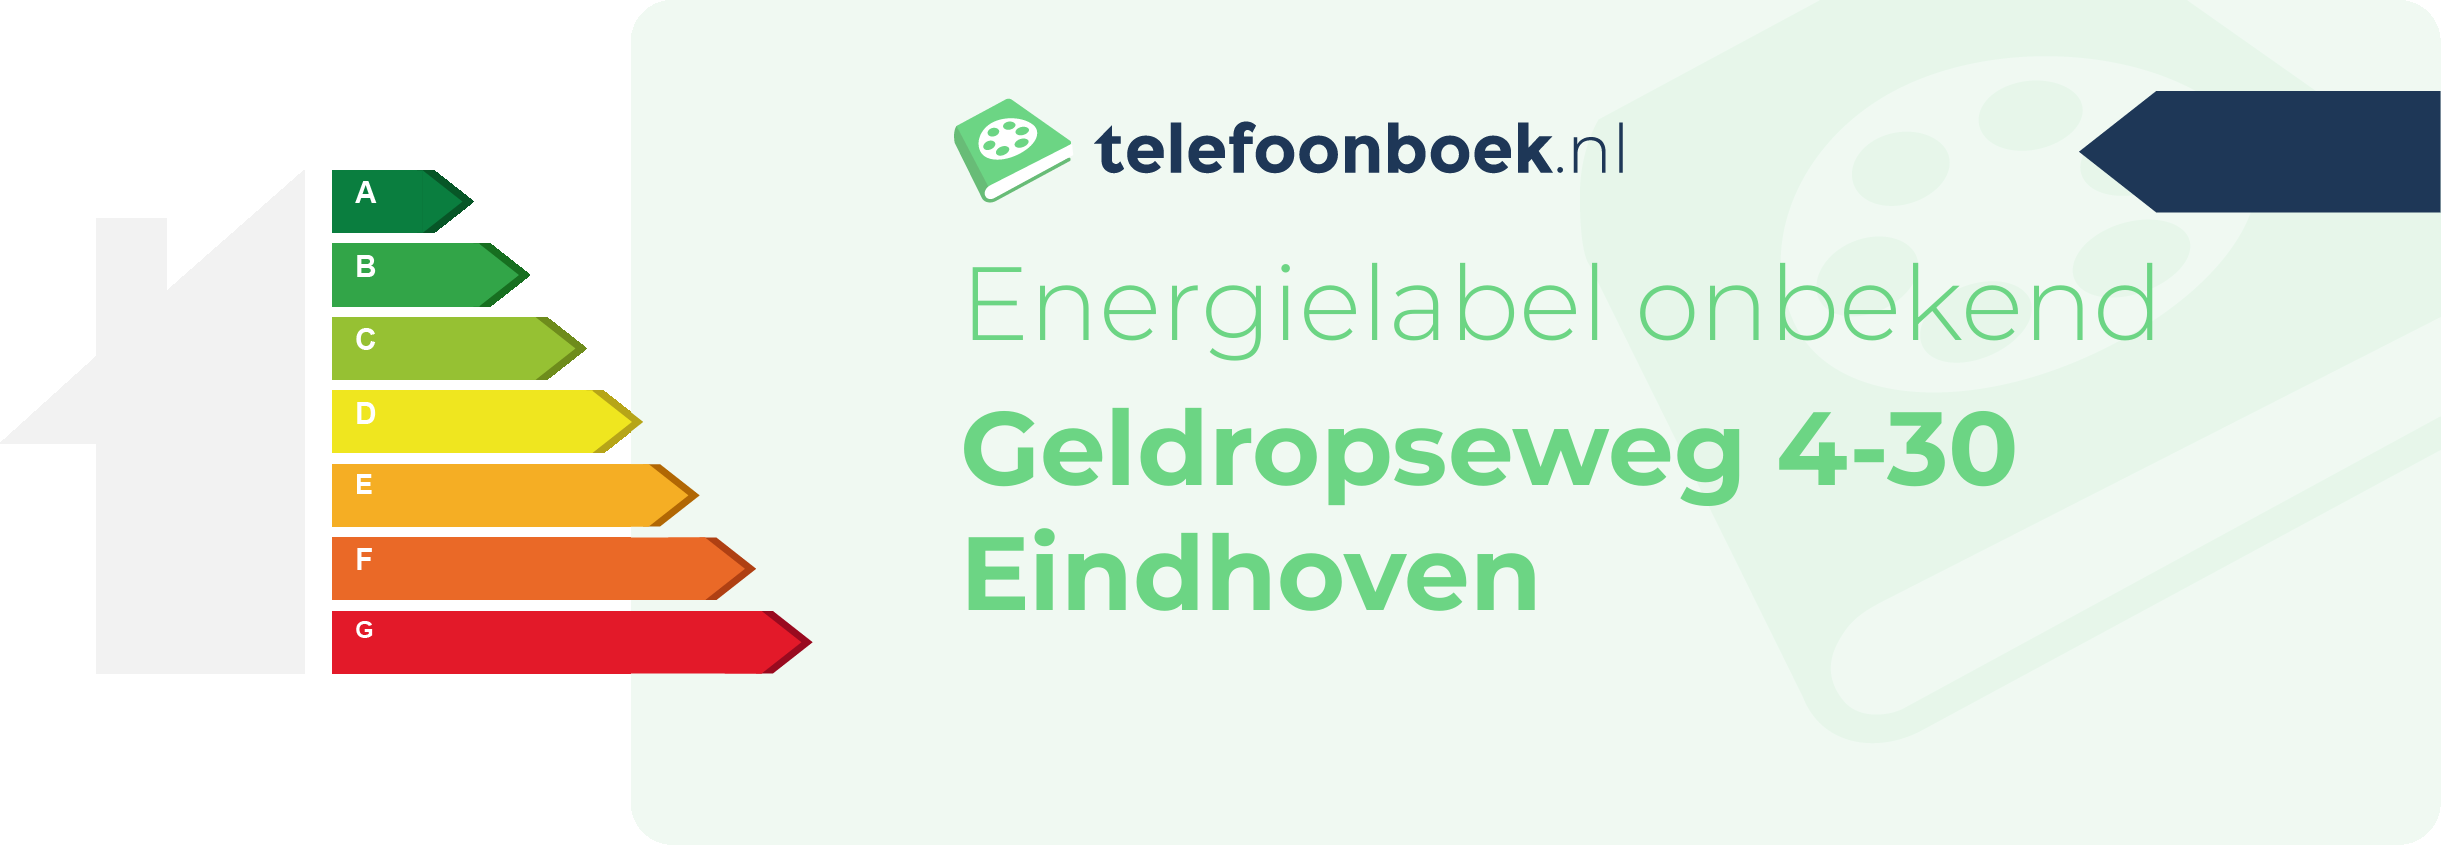 Energielabel Geldropseweg 4-30 Eindhoven